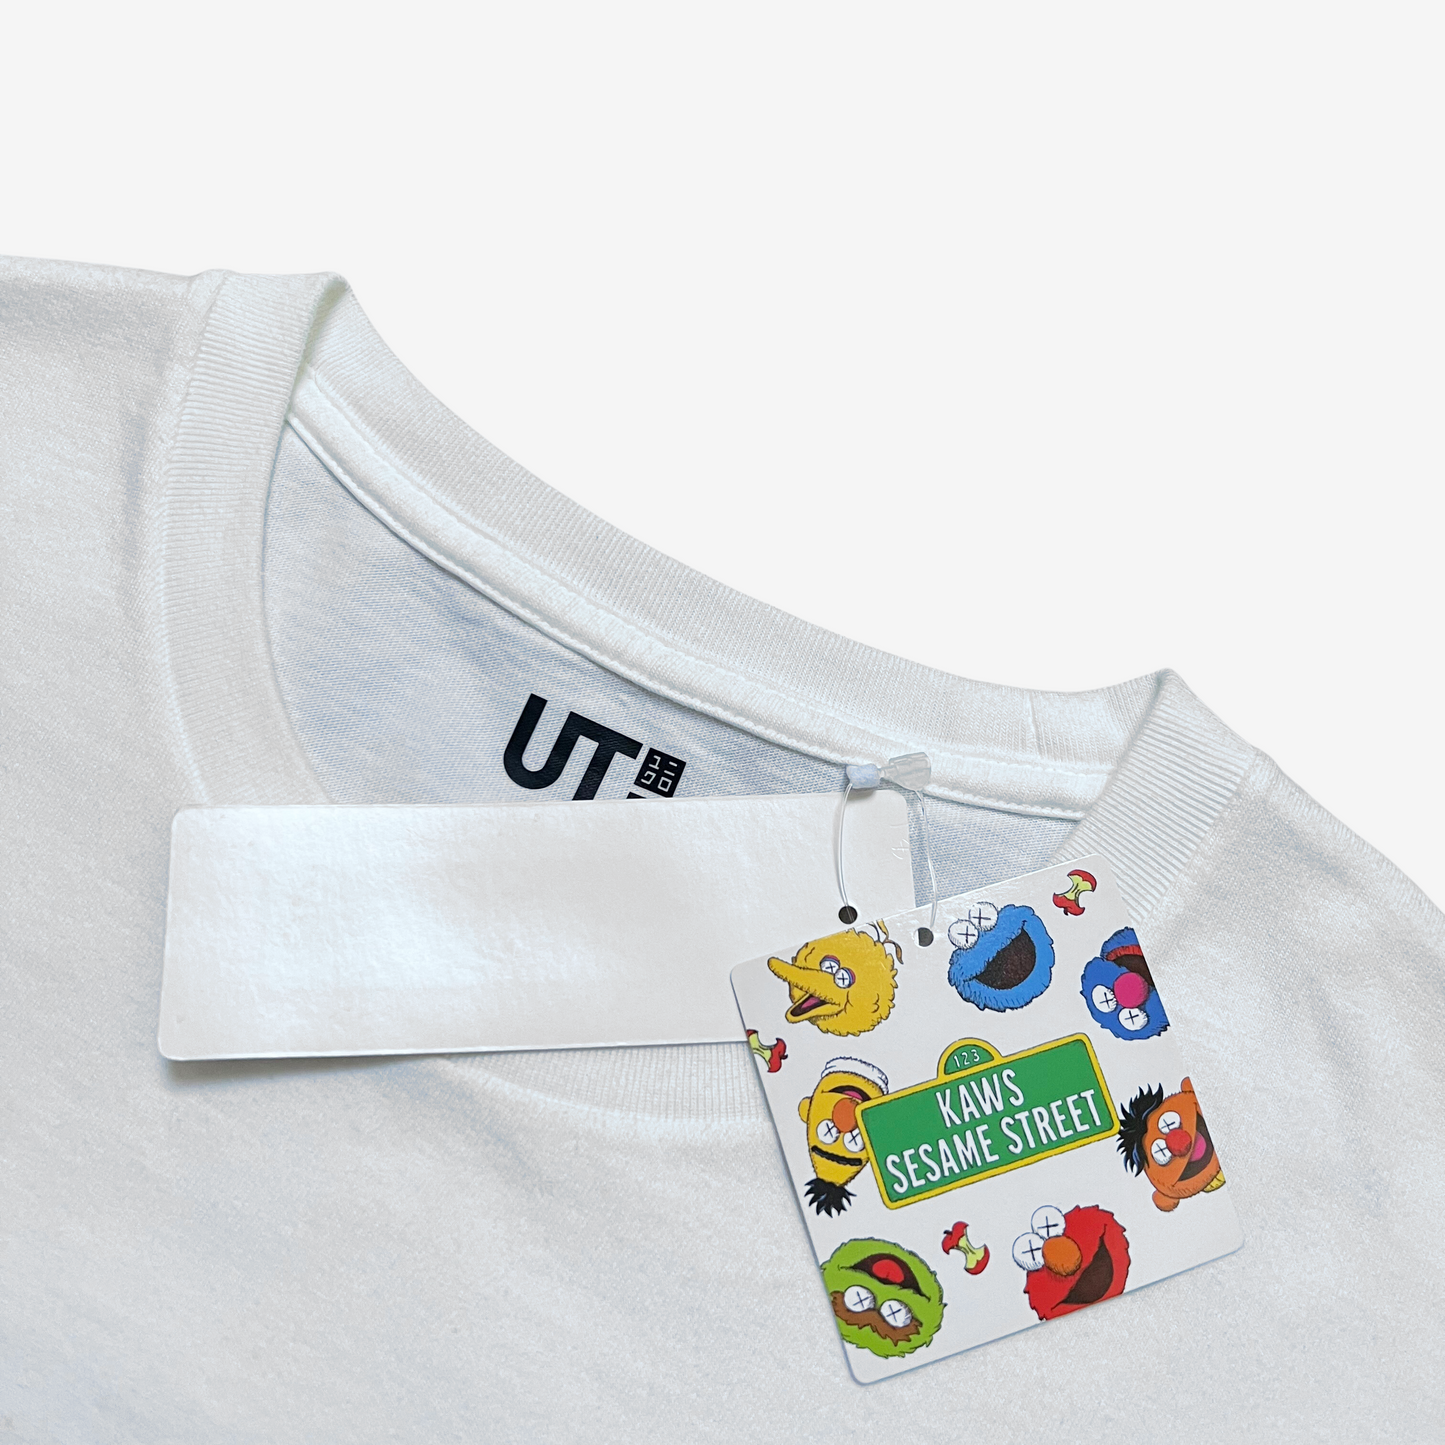 Uniqlo x Sesame Street White BFF Elmo T-Shirt